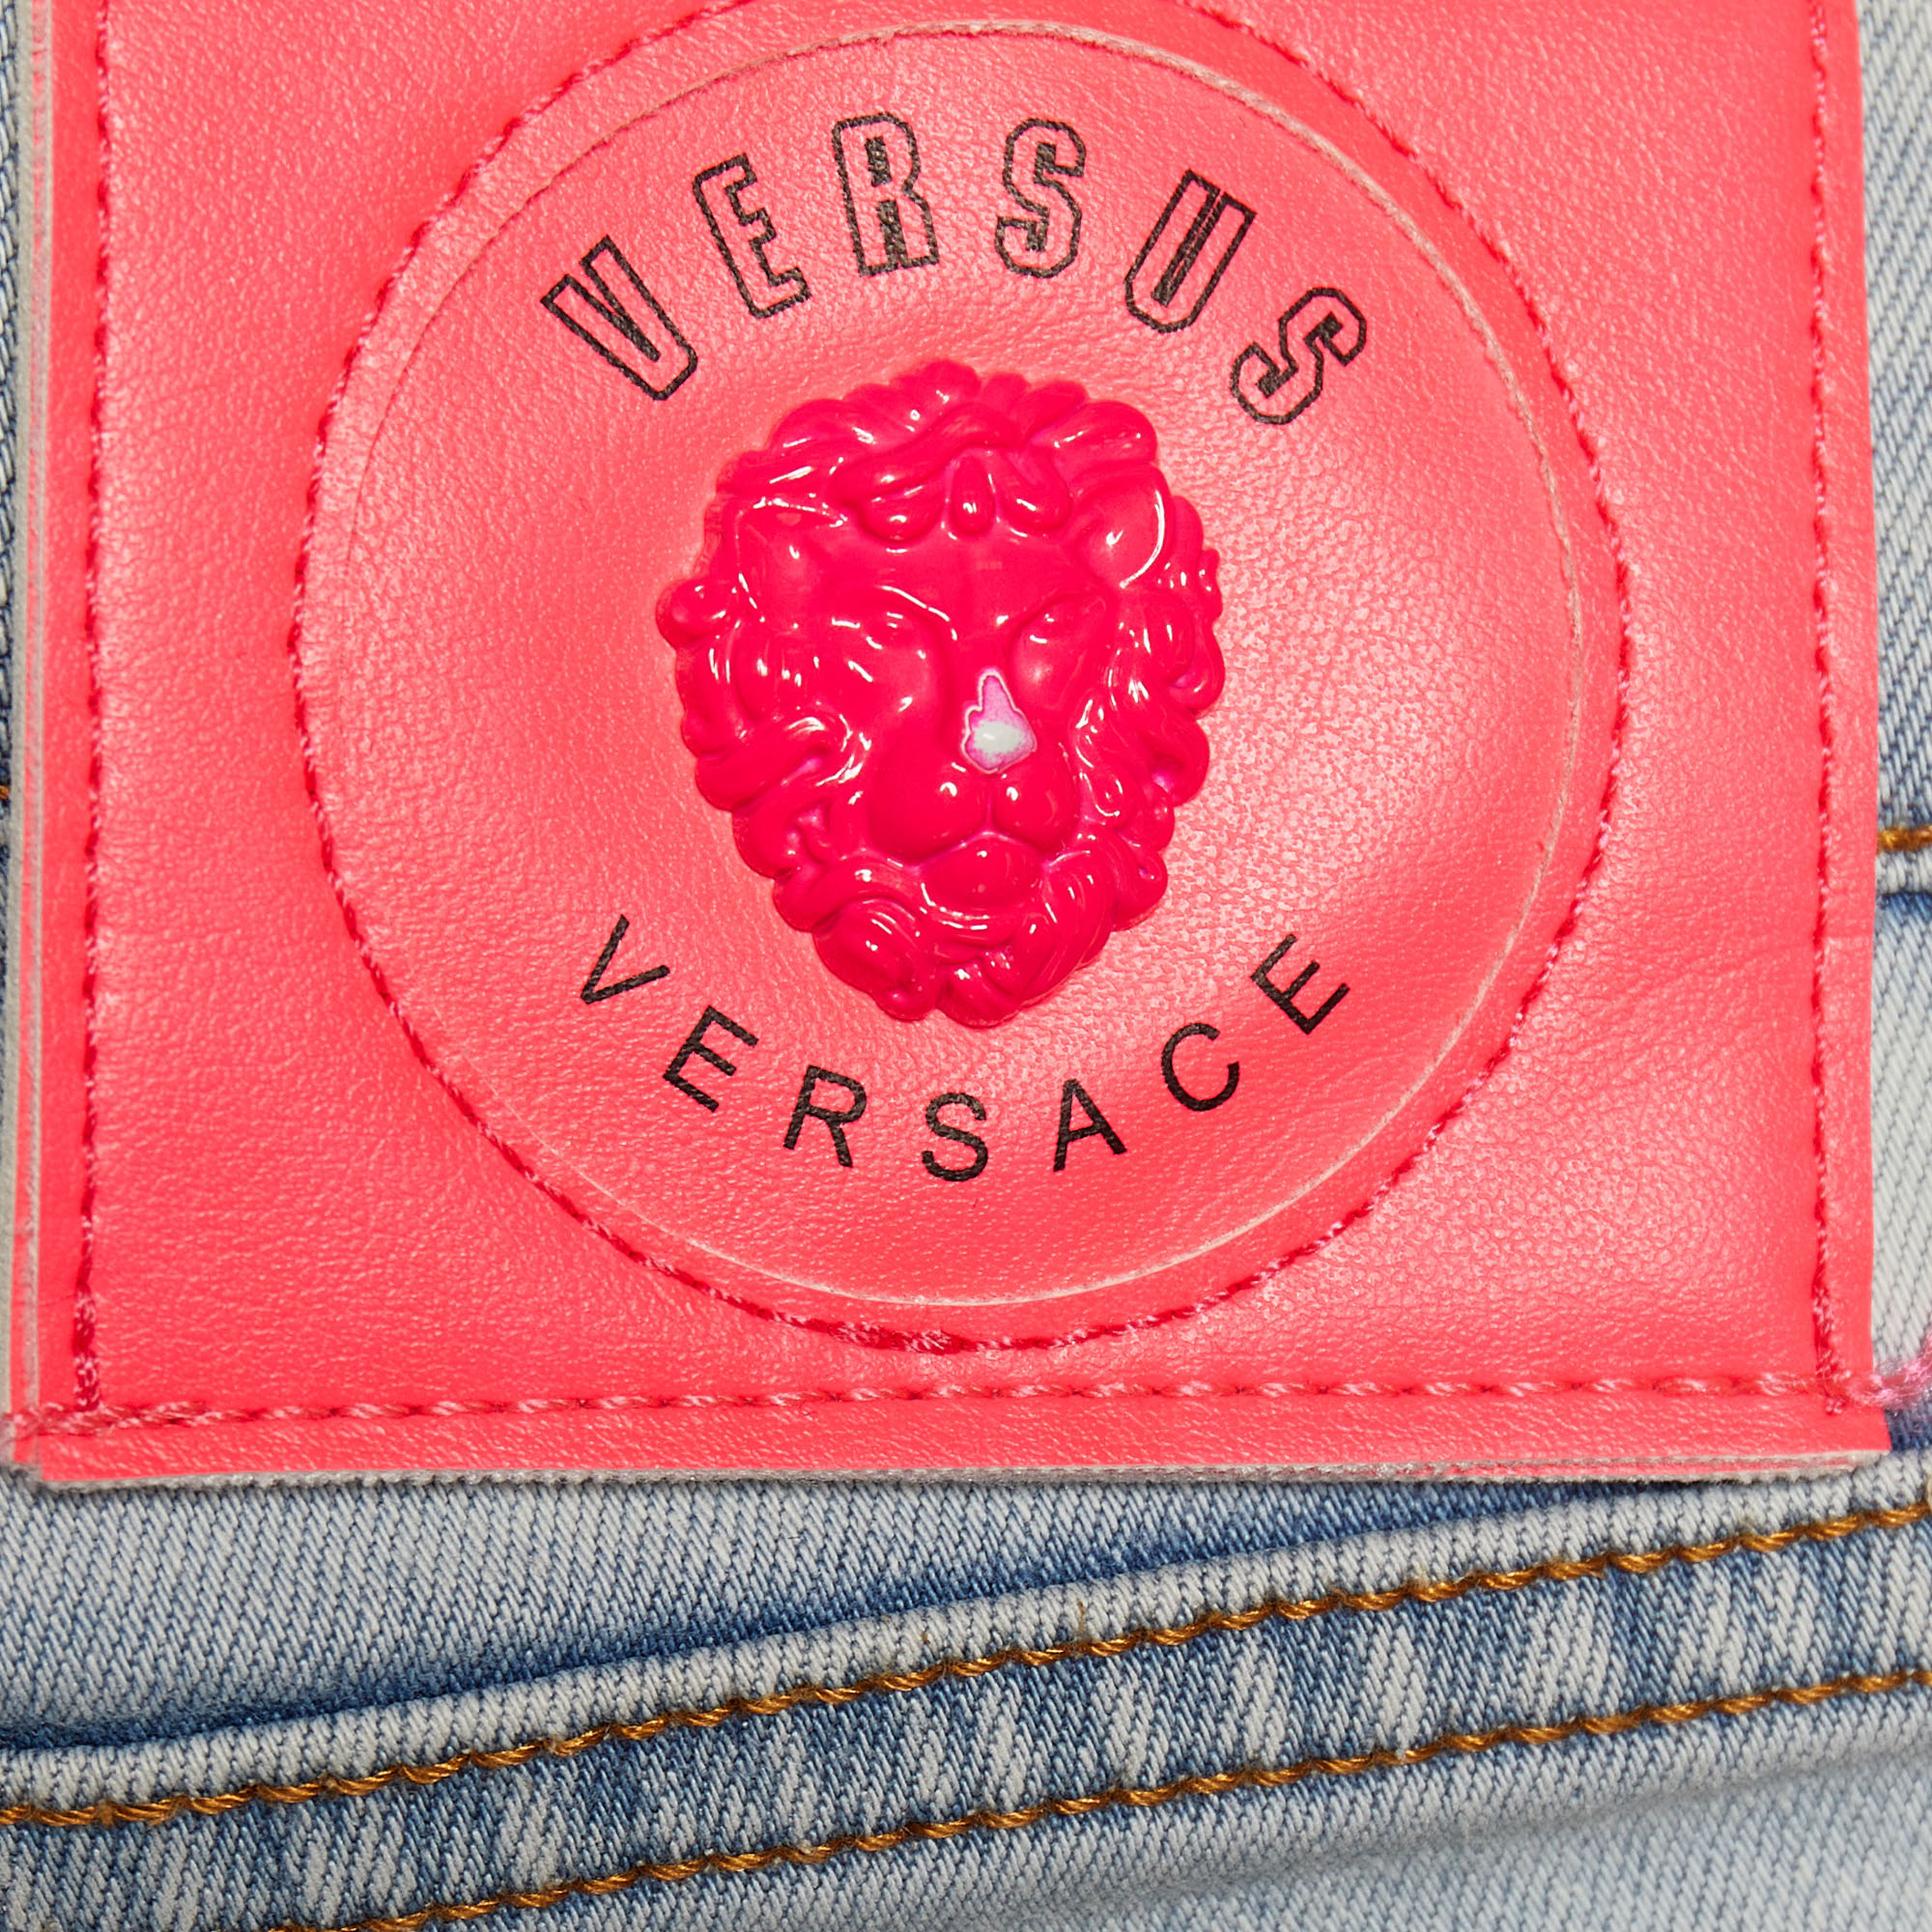 Versus Versace Blue Denim Logo Printed Side Strip Detail Slim Fit Jeans S Waist 28